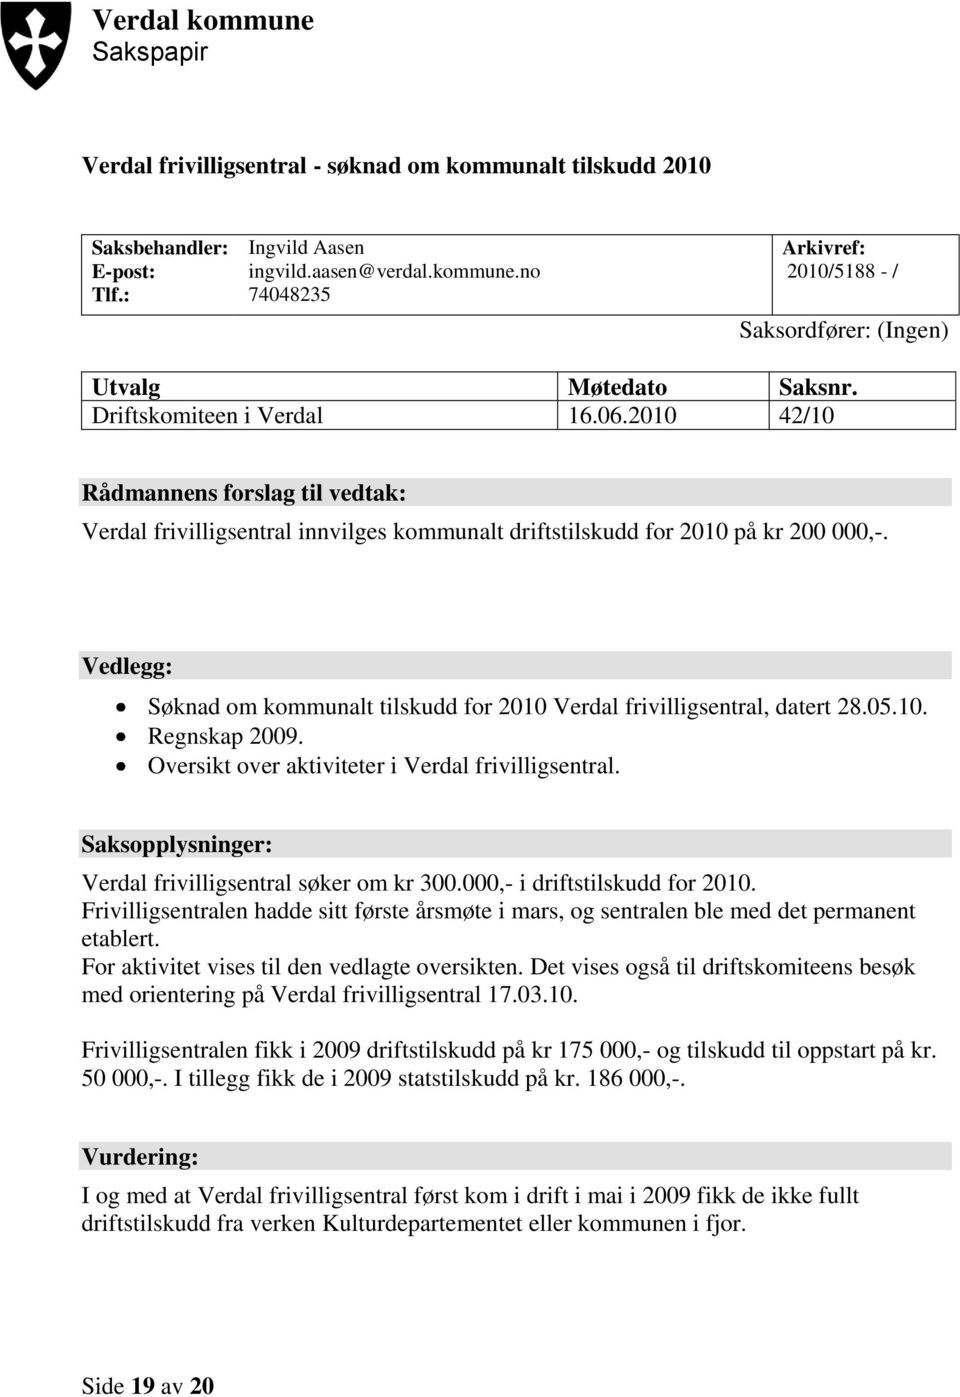 Vedlegg: Søknad om kommunalt tilskudd for 2010 Verdal frivilligsentral, datert 28.05.10. Regnskap 2009. Oversikt over aktiviteter i Verdal frivilligsentral.